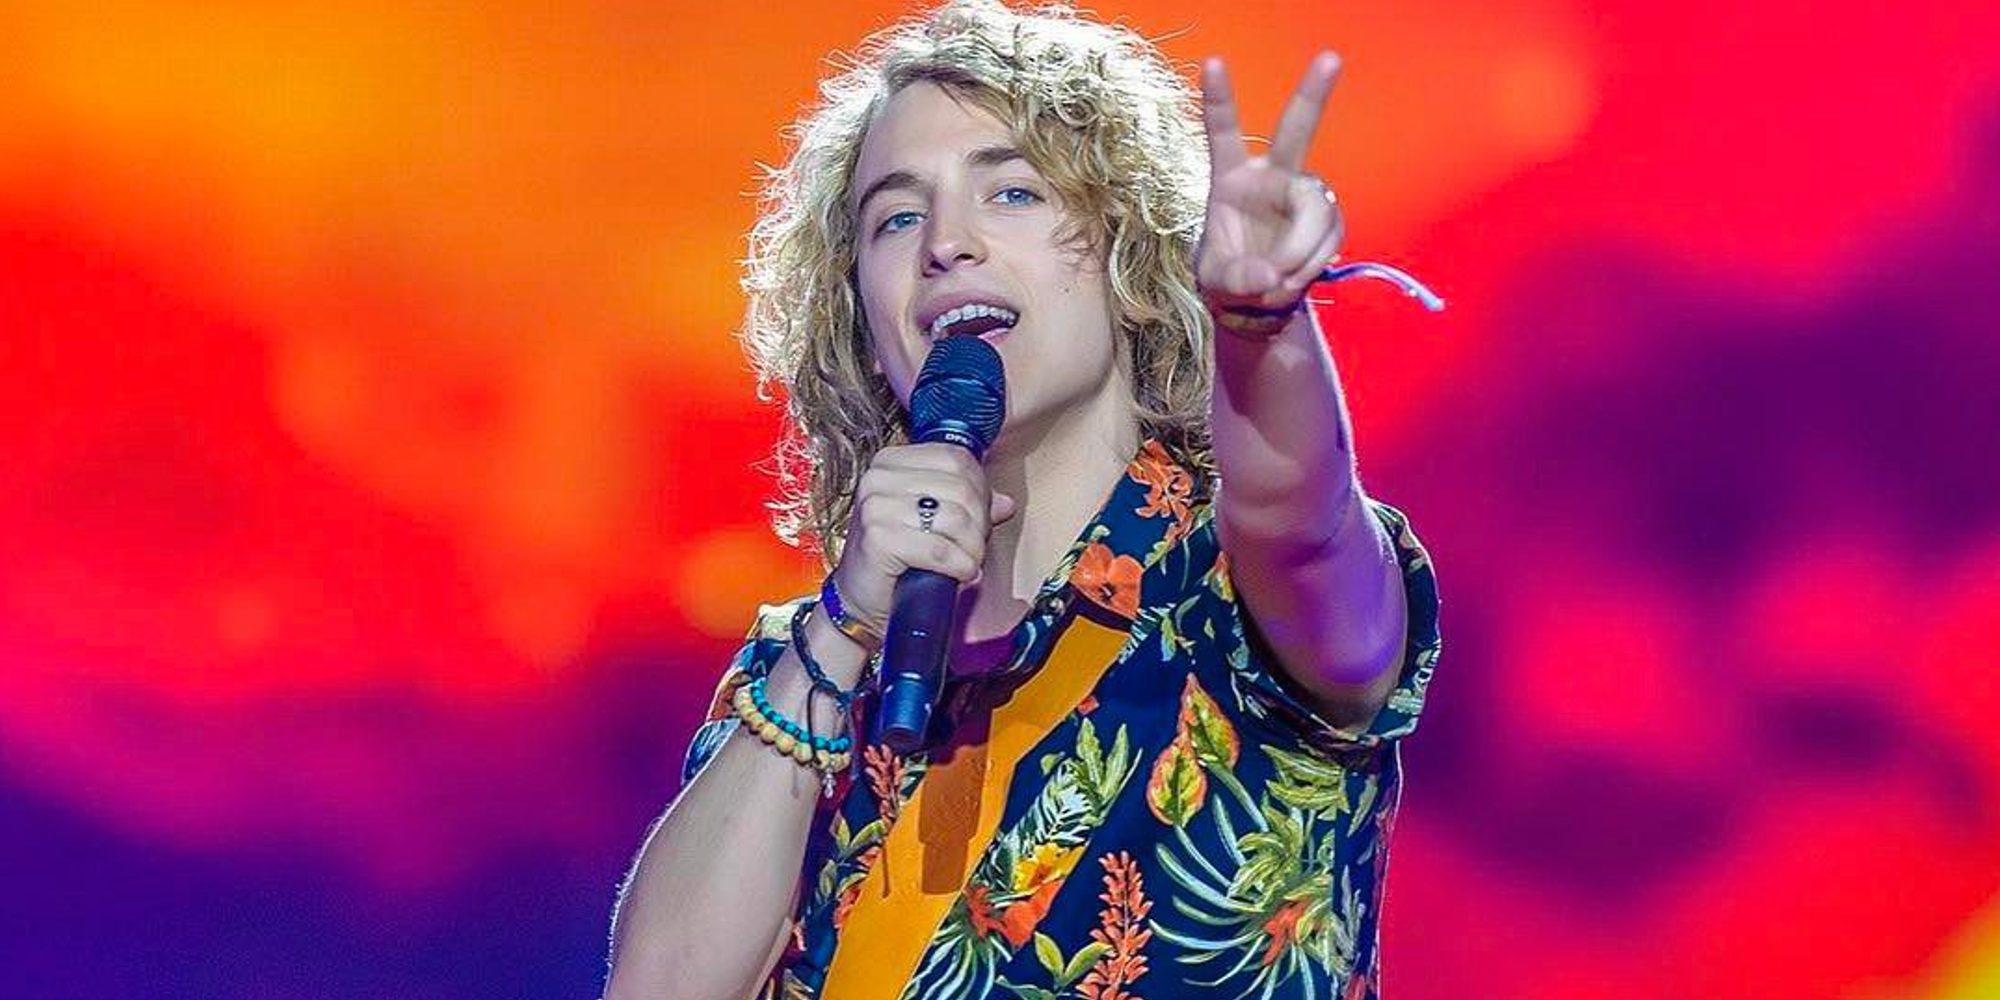 Los tristes 5 puntos con los que Manel Navarro queda el último en el Festival de Eurovisión 2017